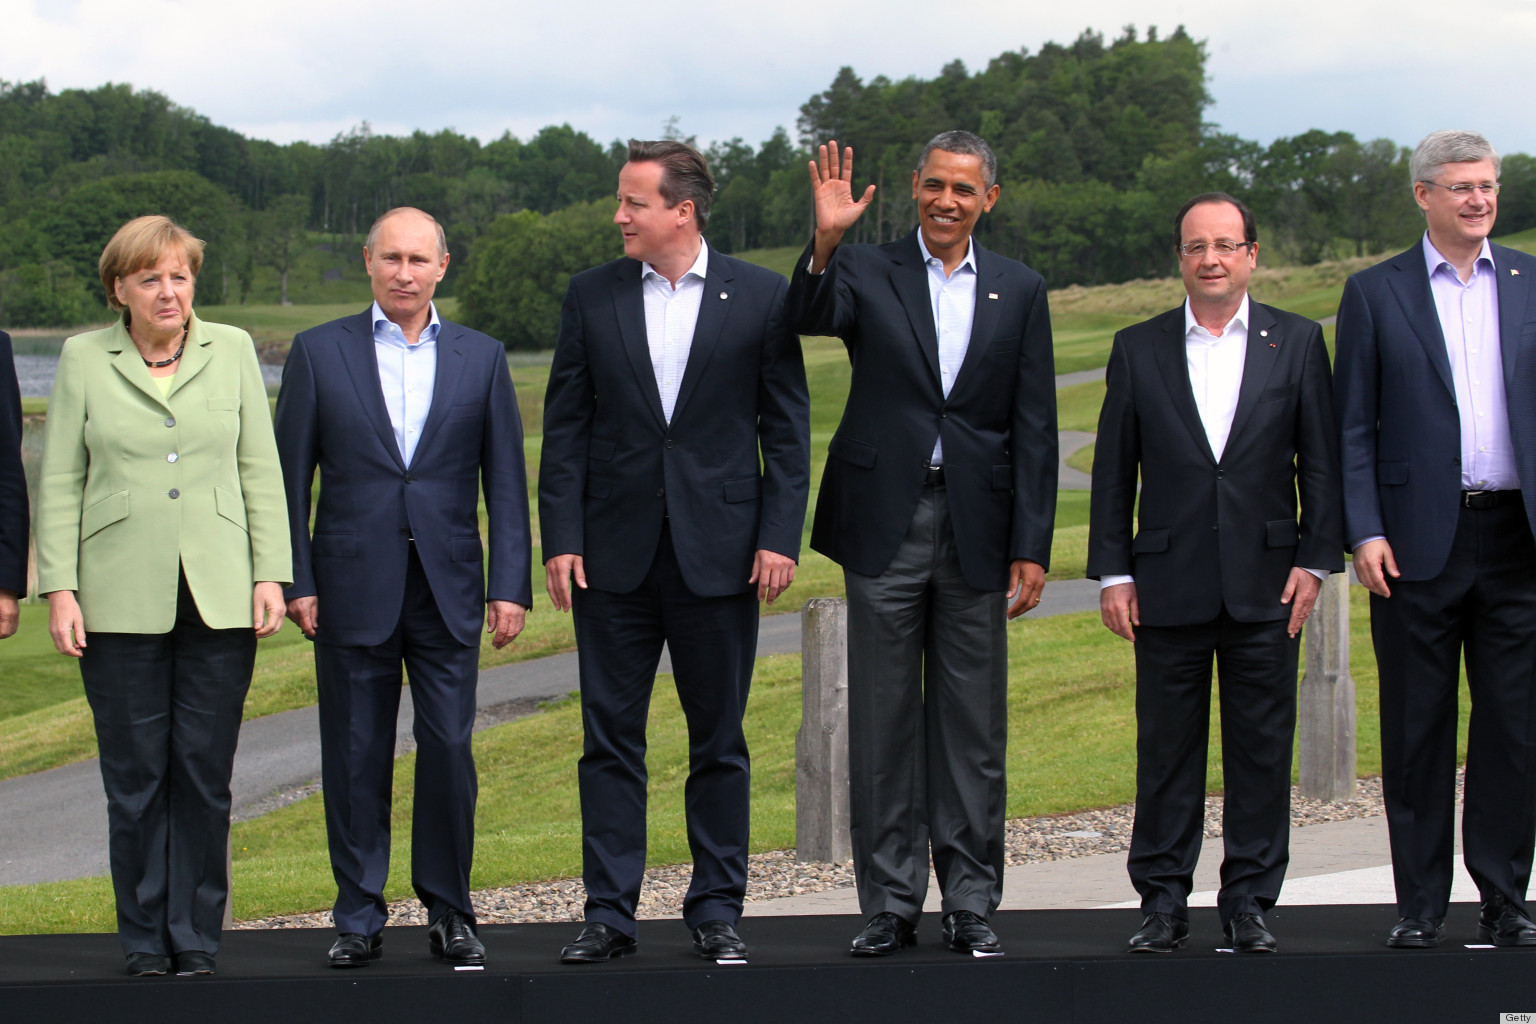 G8 Summit